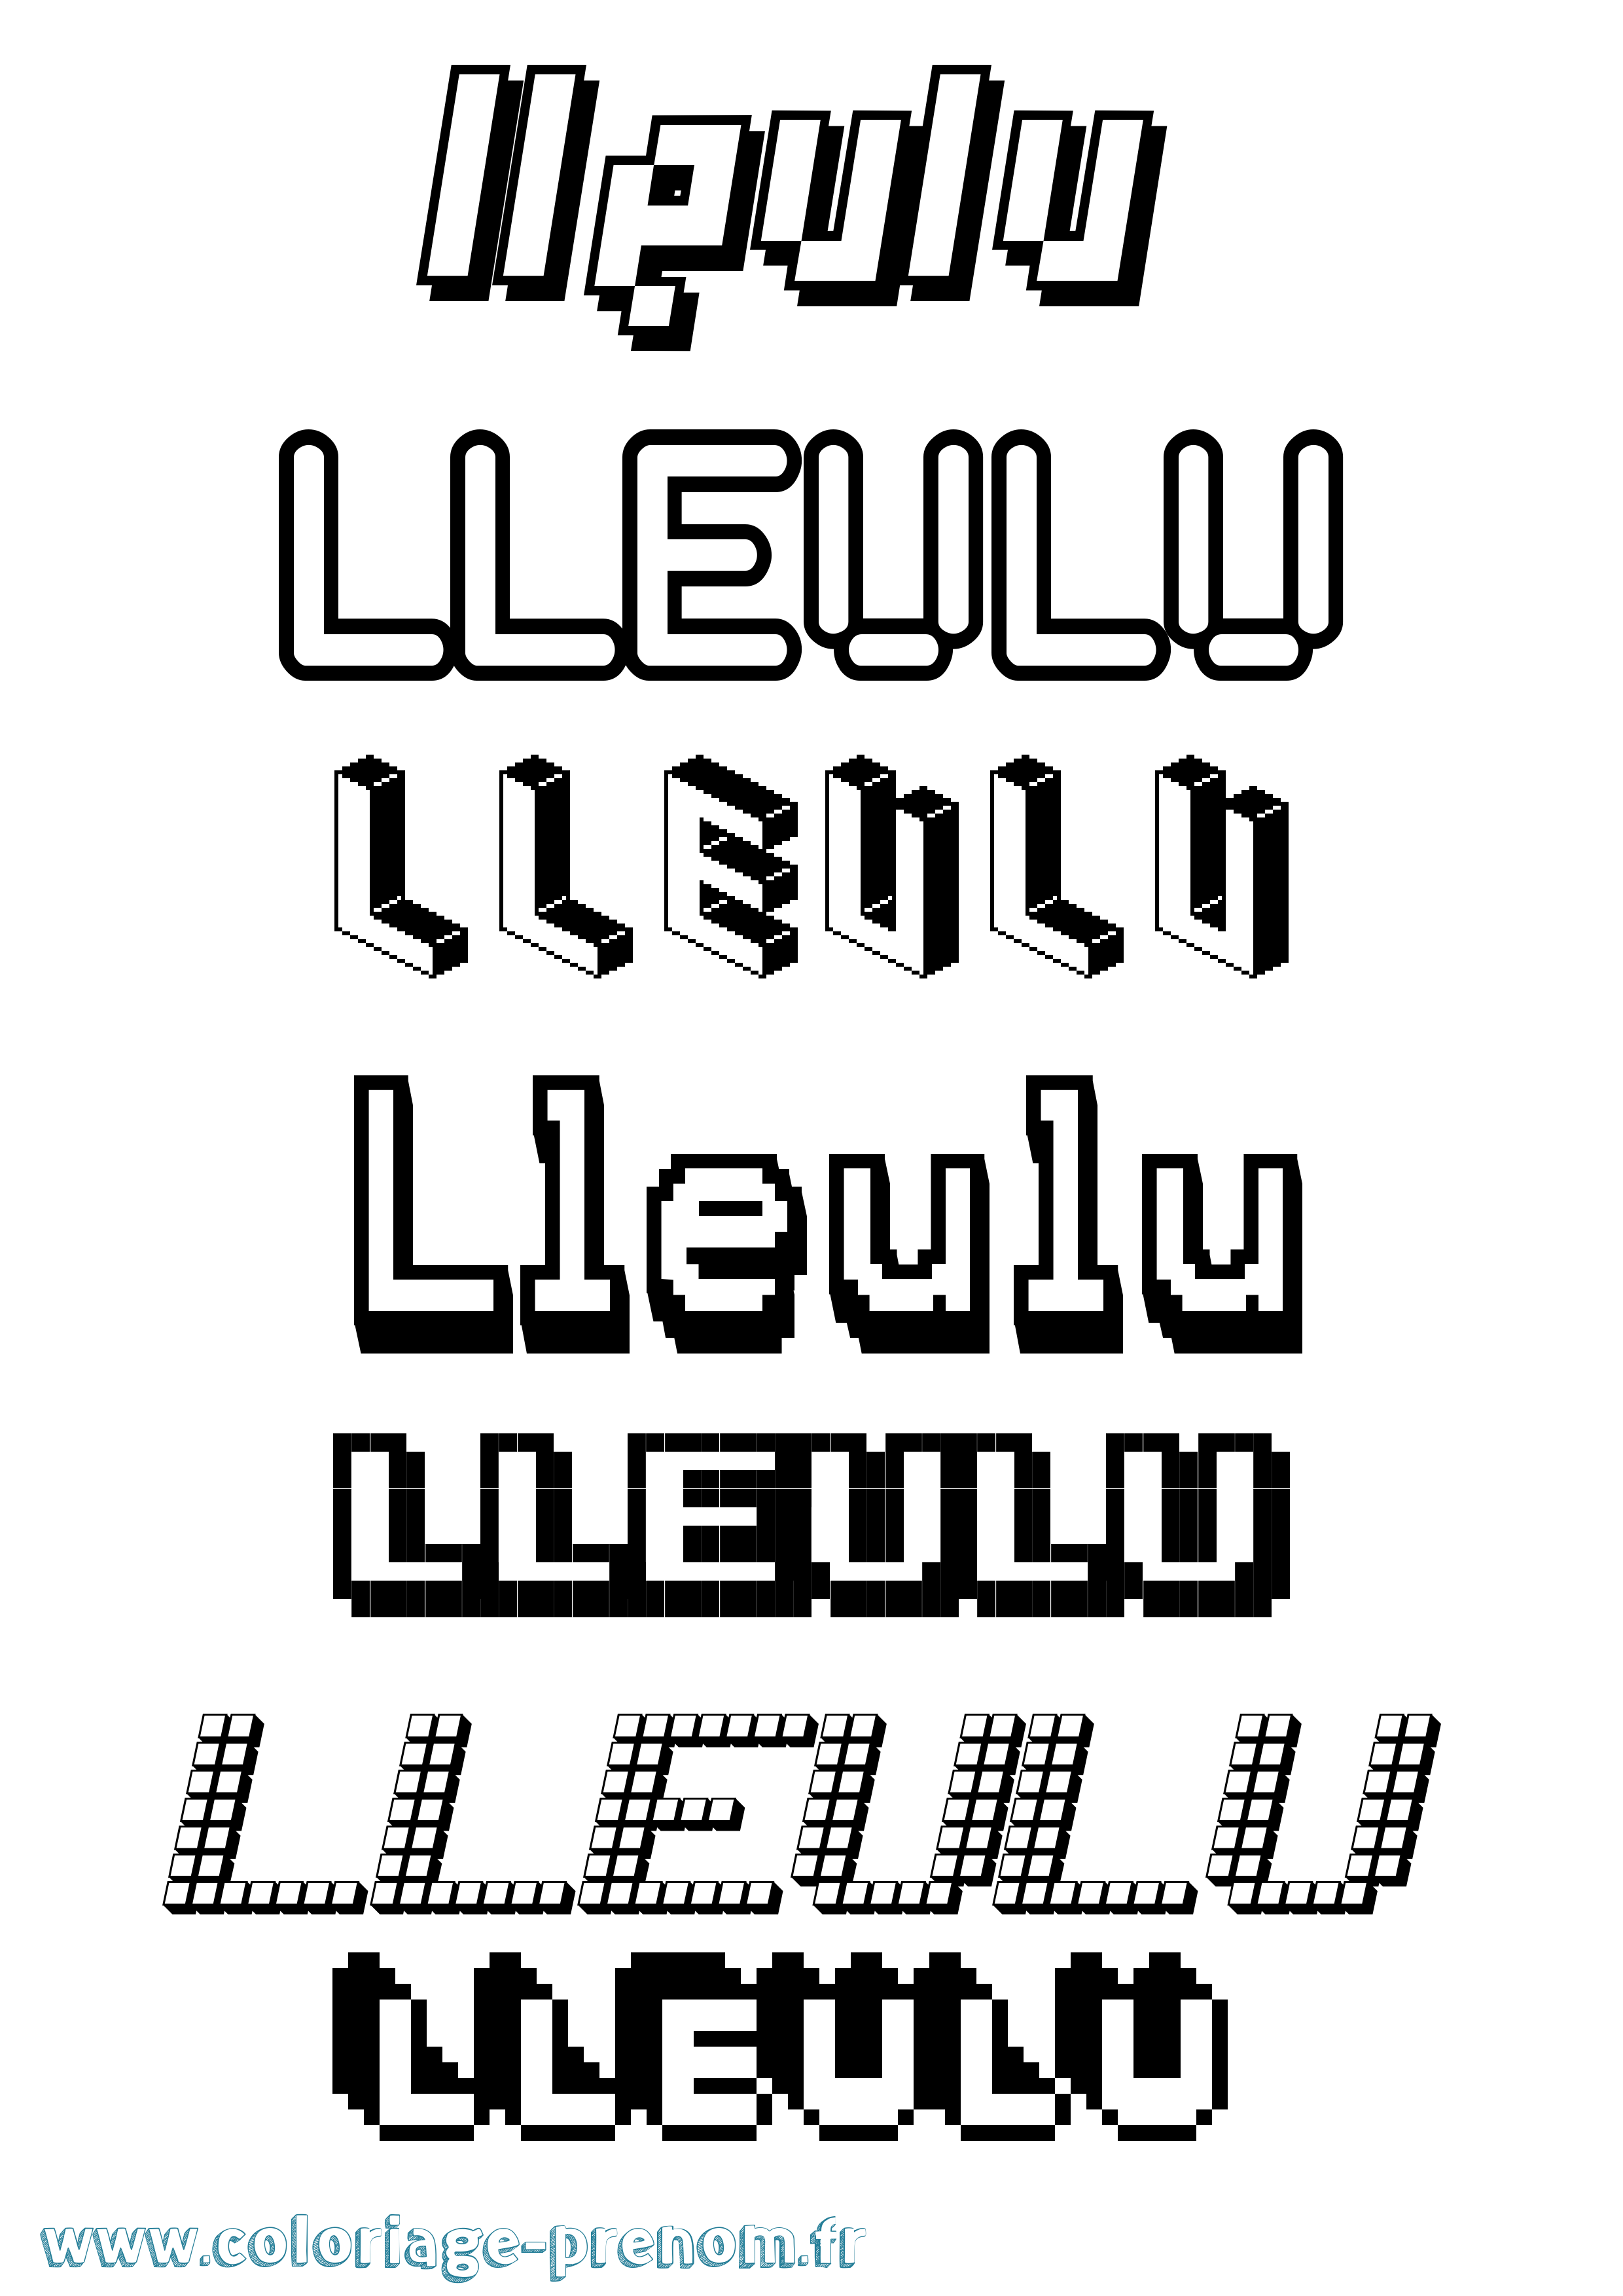 Coloriage prénom Lleulu Pixel